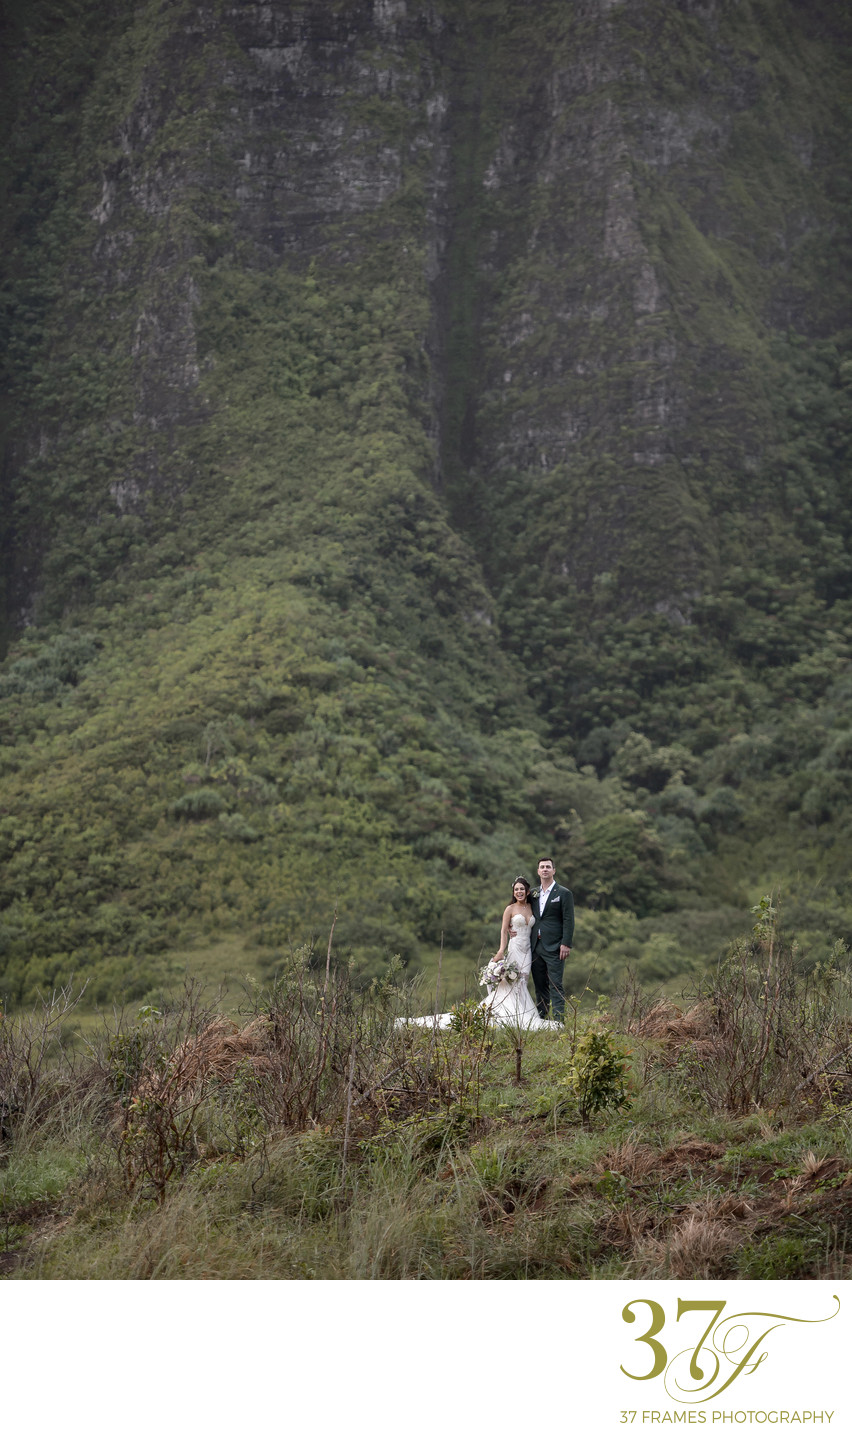 Oahu’s Top Wedding venues